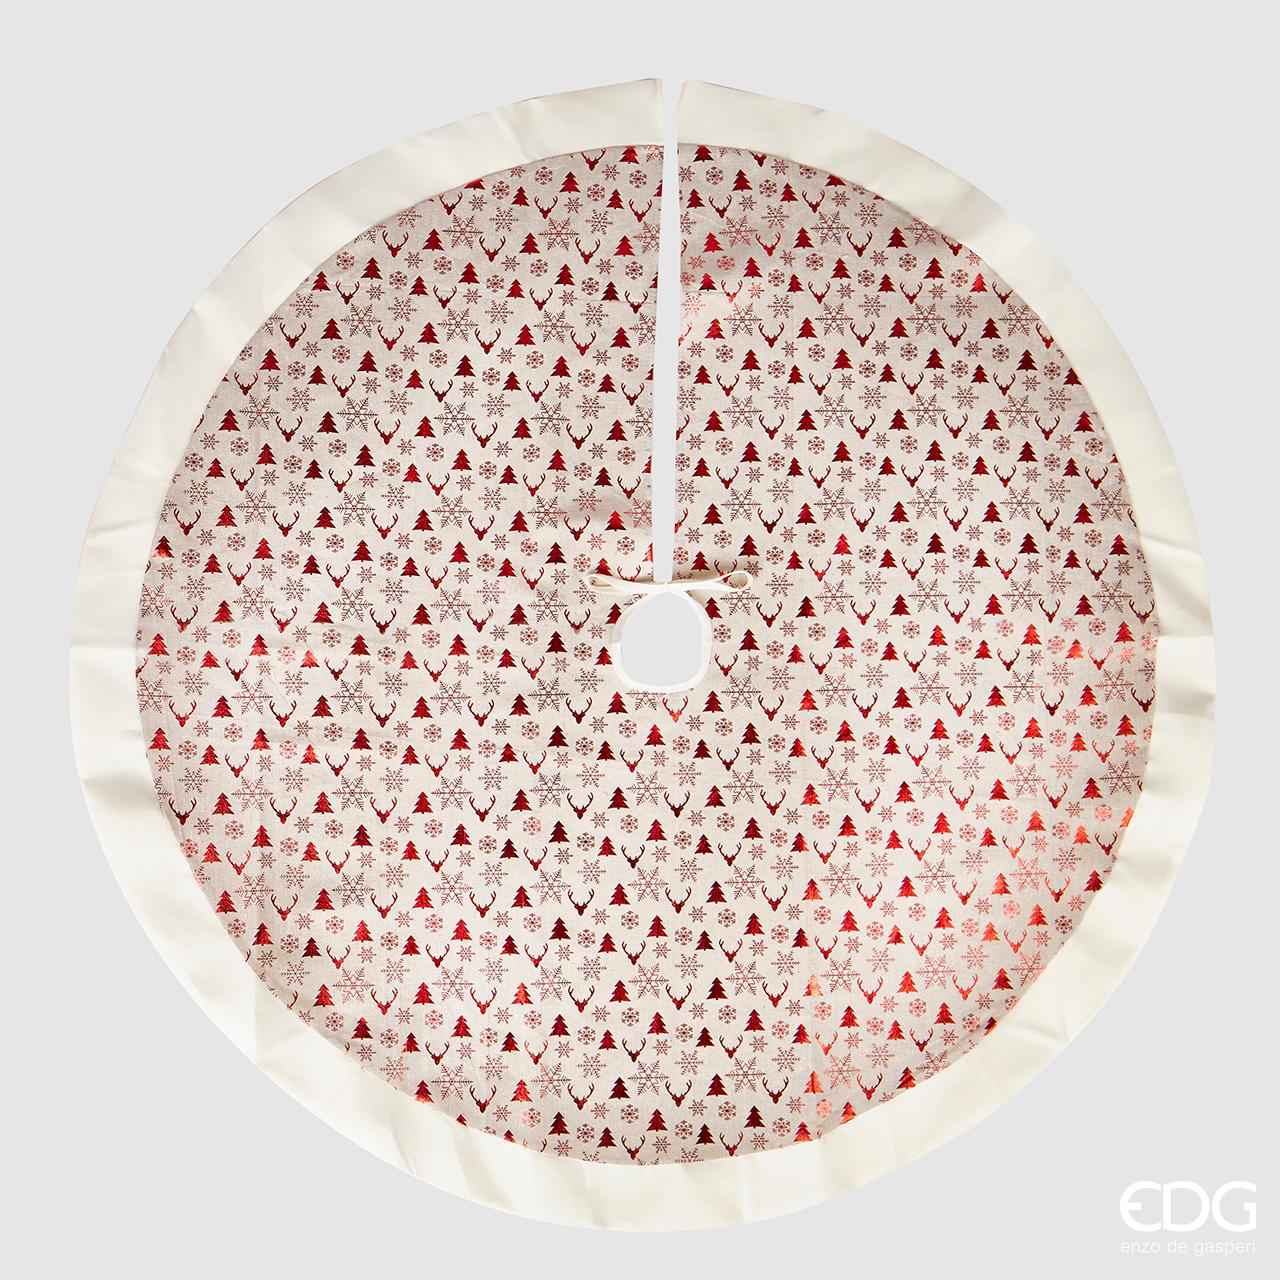 Copri base per albero di natale. Dimensioni: diametro cm 120Colore: disegni in rosso su fondo beige chiaro.